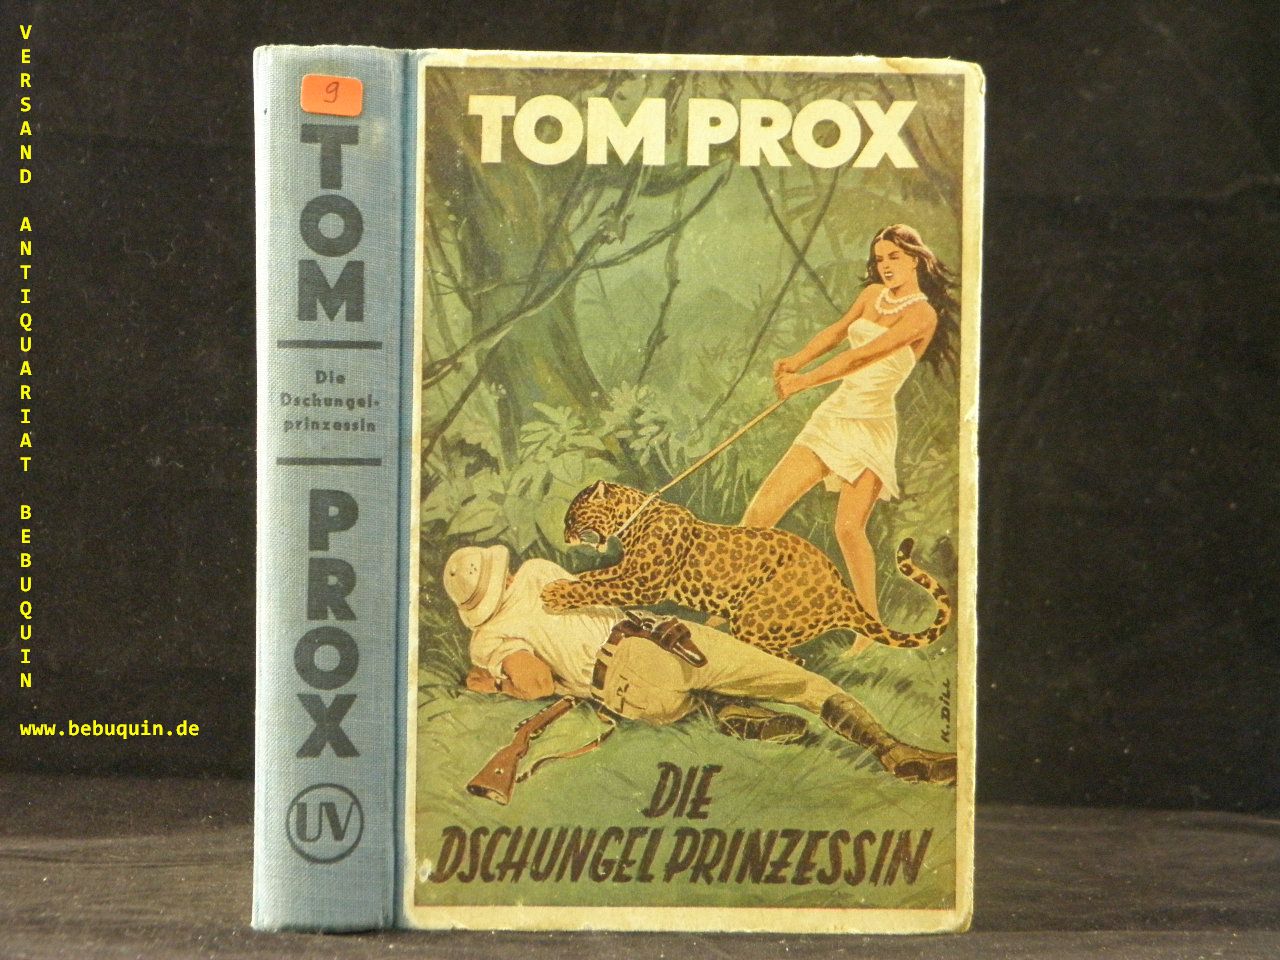 TOM PROX.-  RANDALL, Rolf: - (d.i. Joachim Rennau) Die Dschungelprinzessin.  Ein spannungsgeladenes Abenteuer, das Tom Prox in Amerika und Afrika zu bestehen hat.